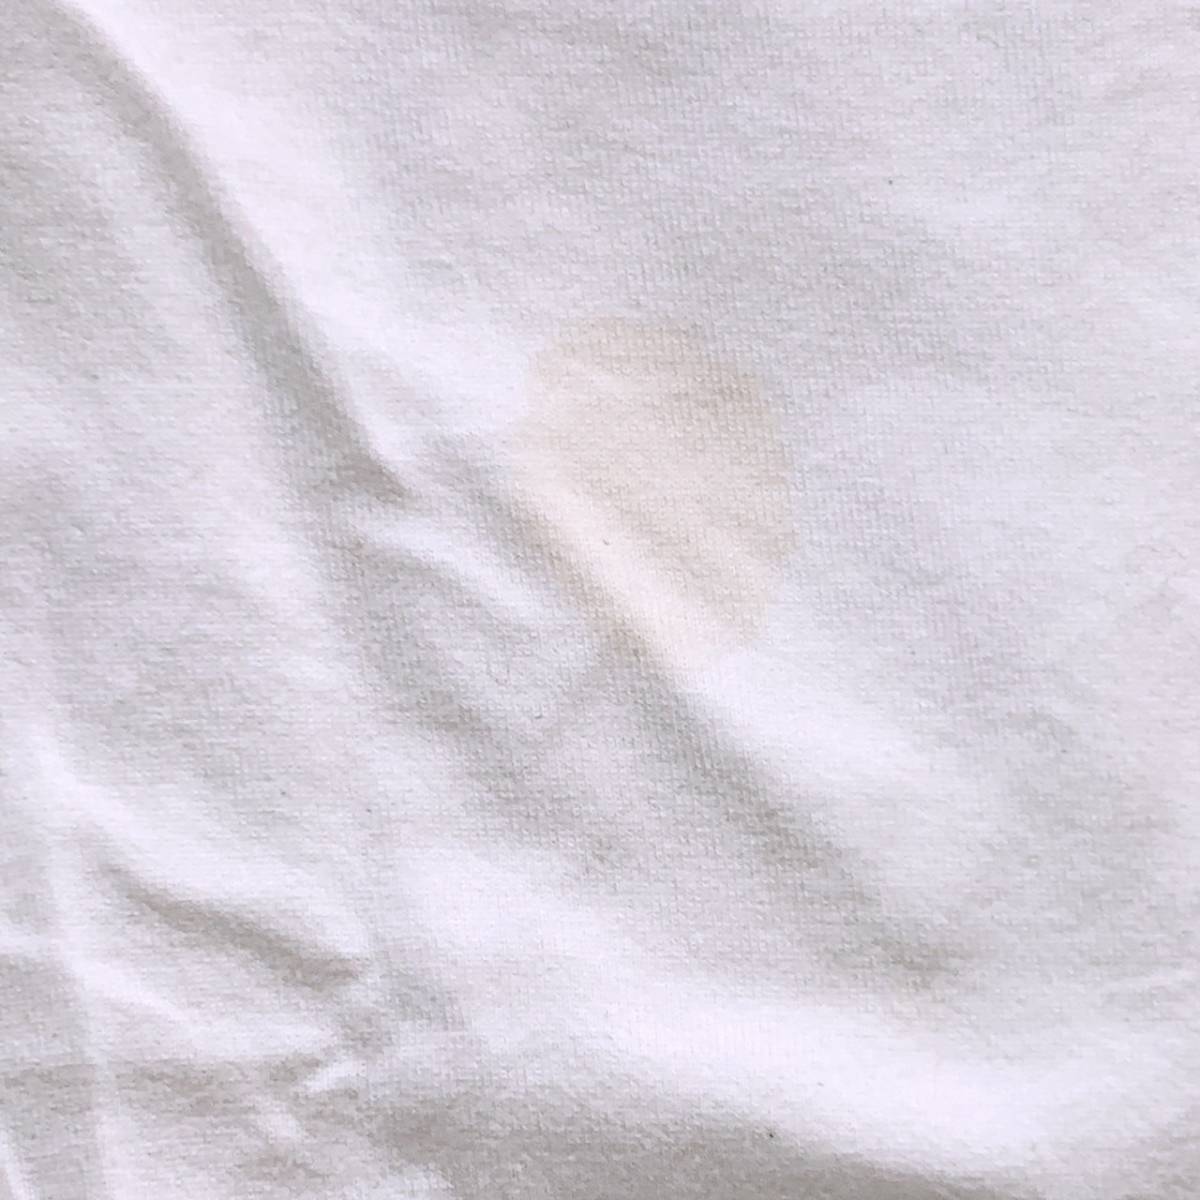 レディース3L Pinktrash 半袖Tシャツ 白 ホワイト プリント文字 春夏 カジュアル シンプル 大きいサイズ ピンクトラッシュ【25692】